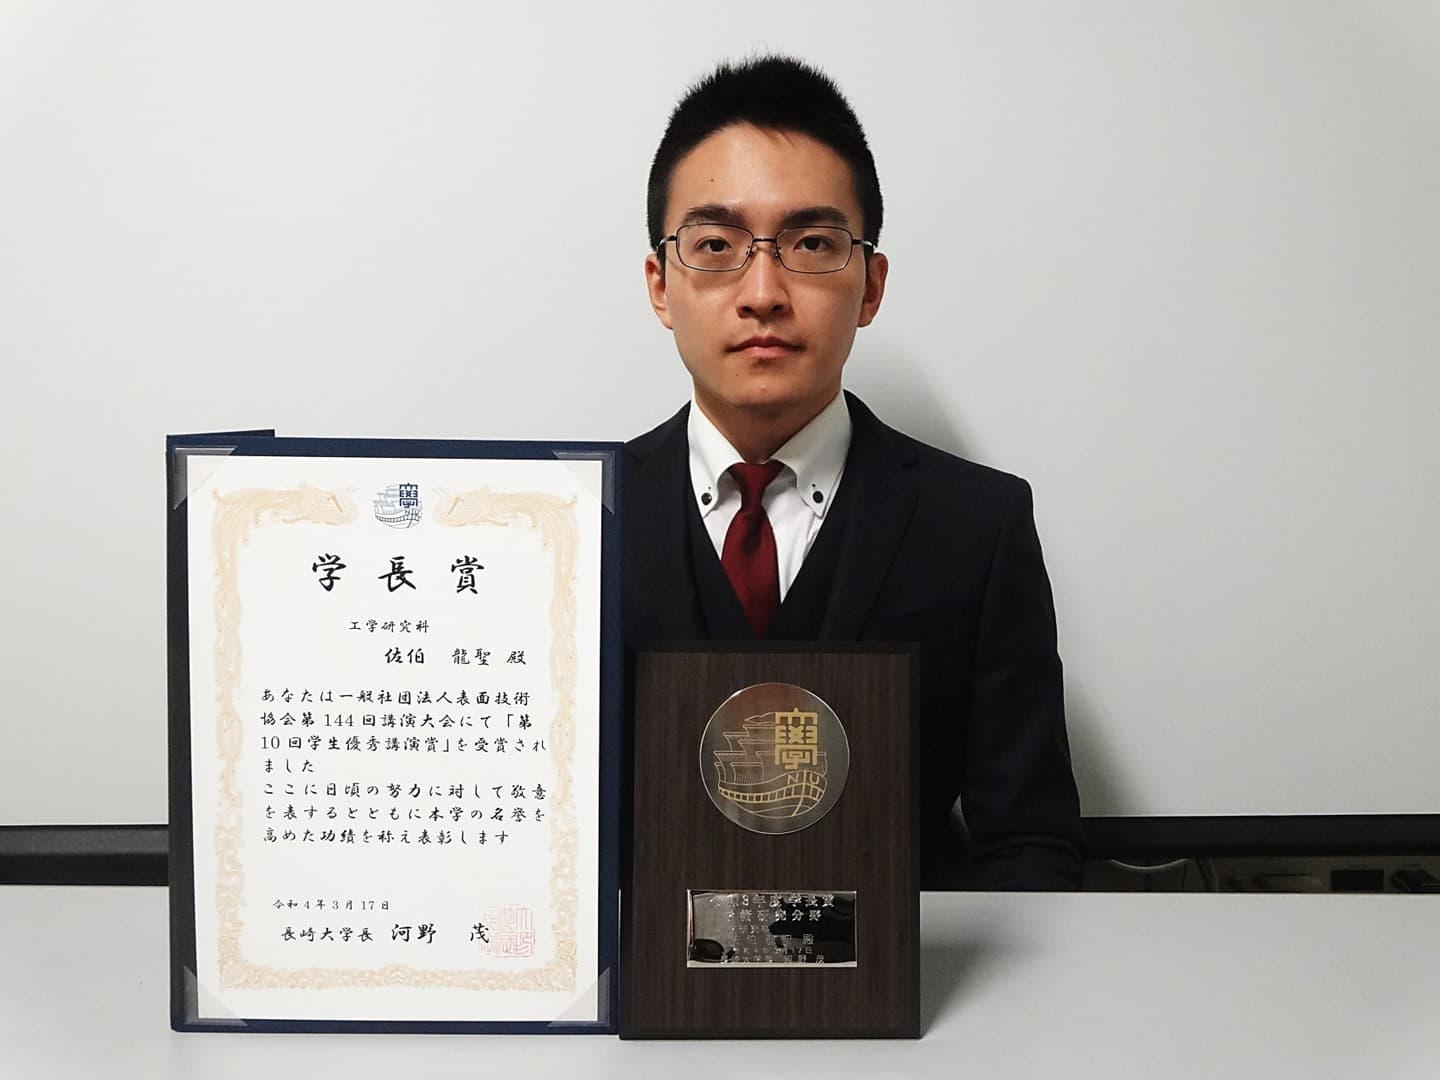 佐伯龍聖君(日本学術振興会特別研究員DC1)が、学長賞(学術研究分野)を受賞しました。2022/03/17